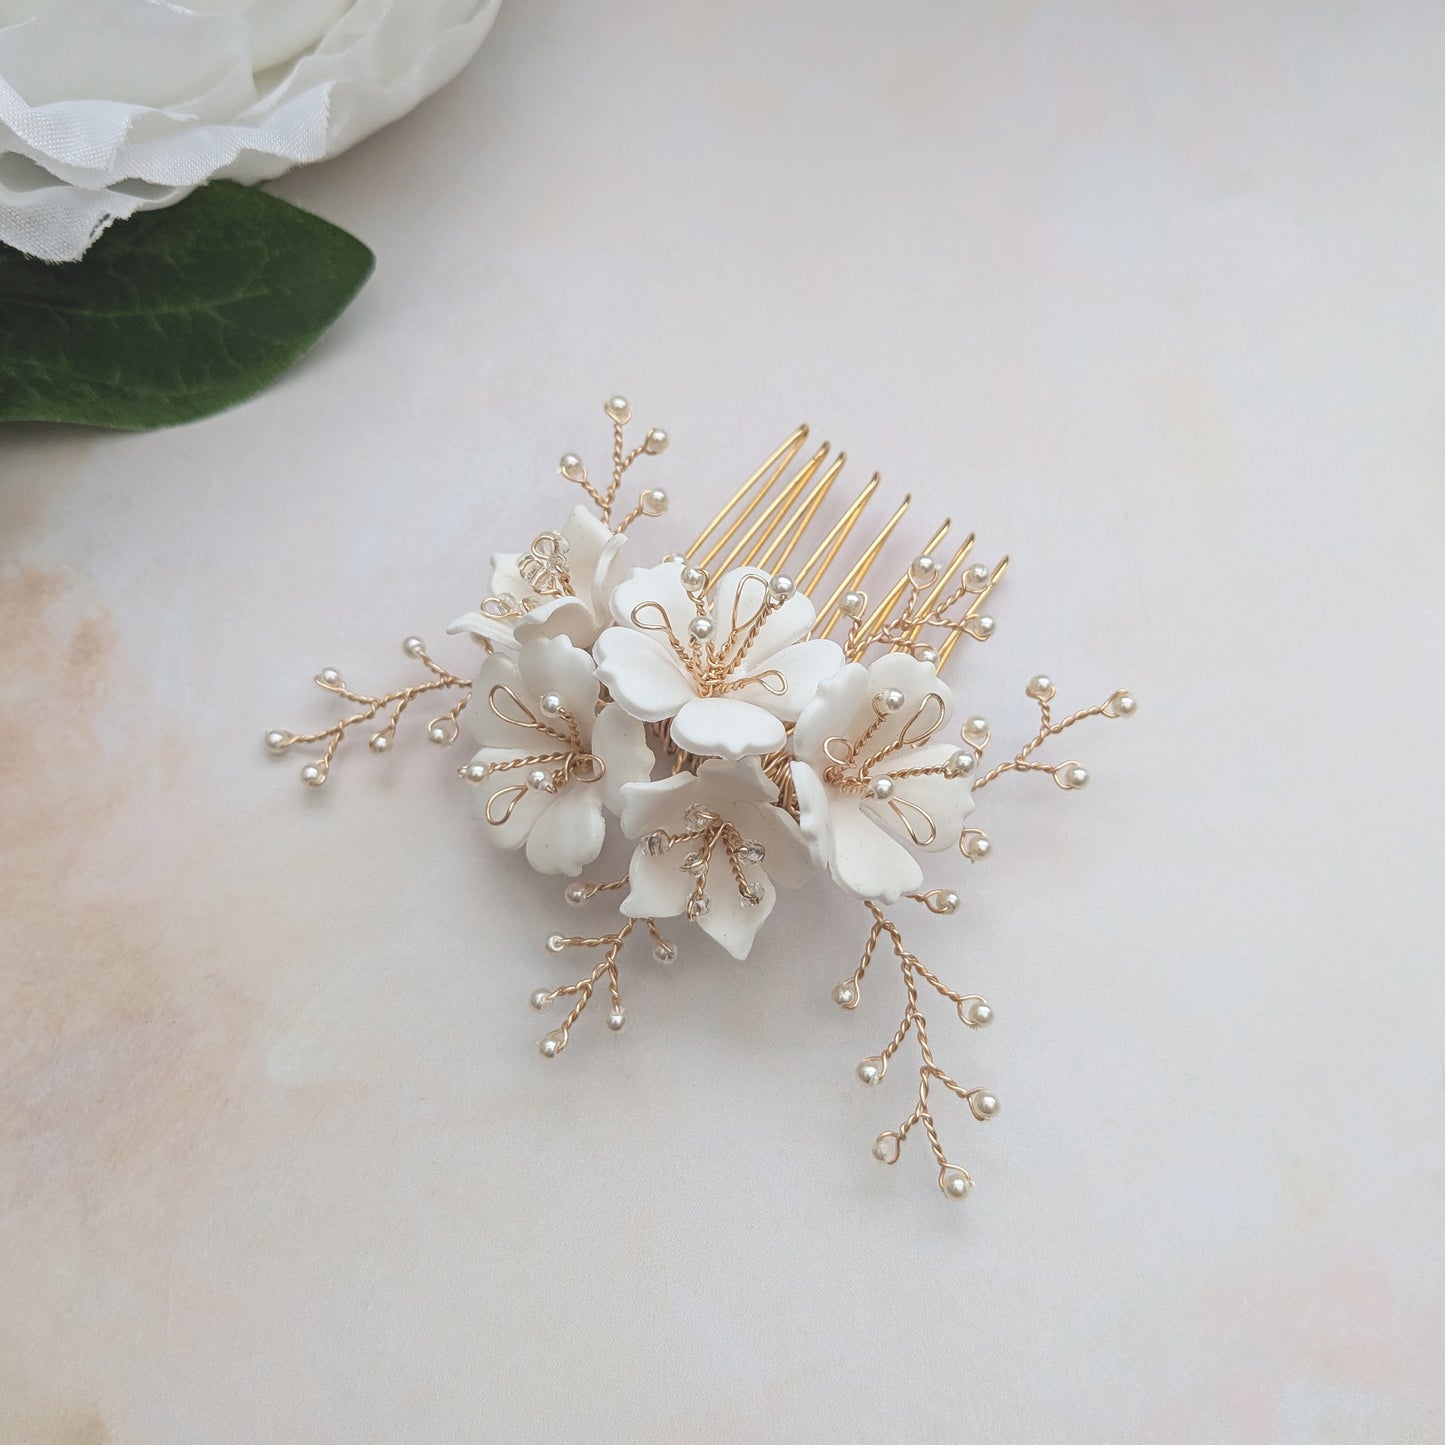 Modern floral bridal hair comb for weddings - Susie Warner